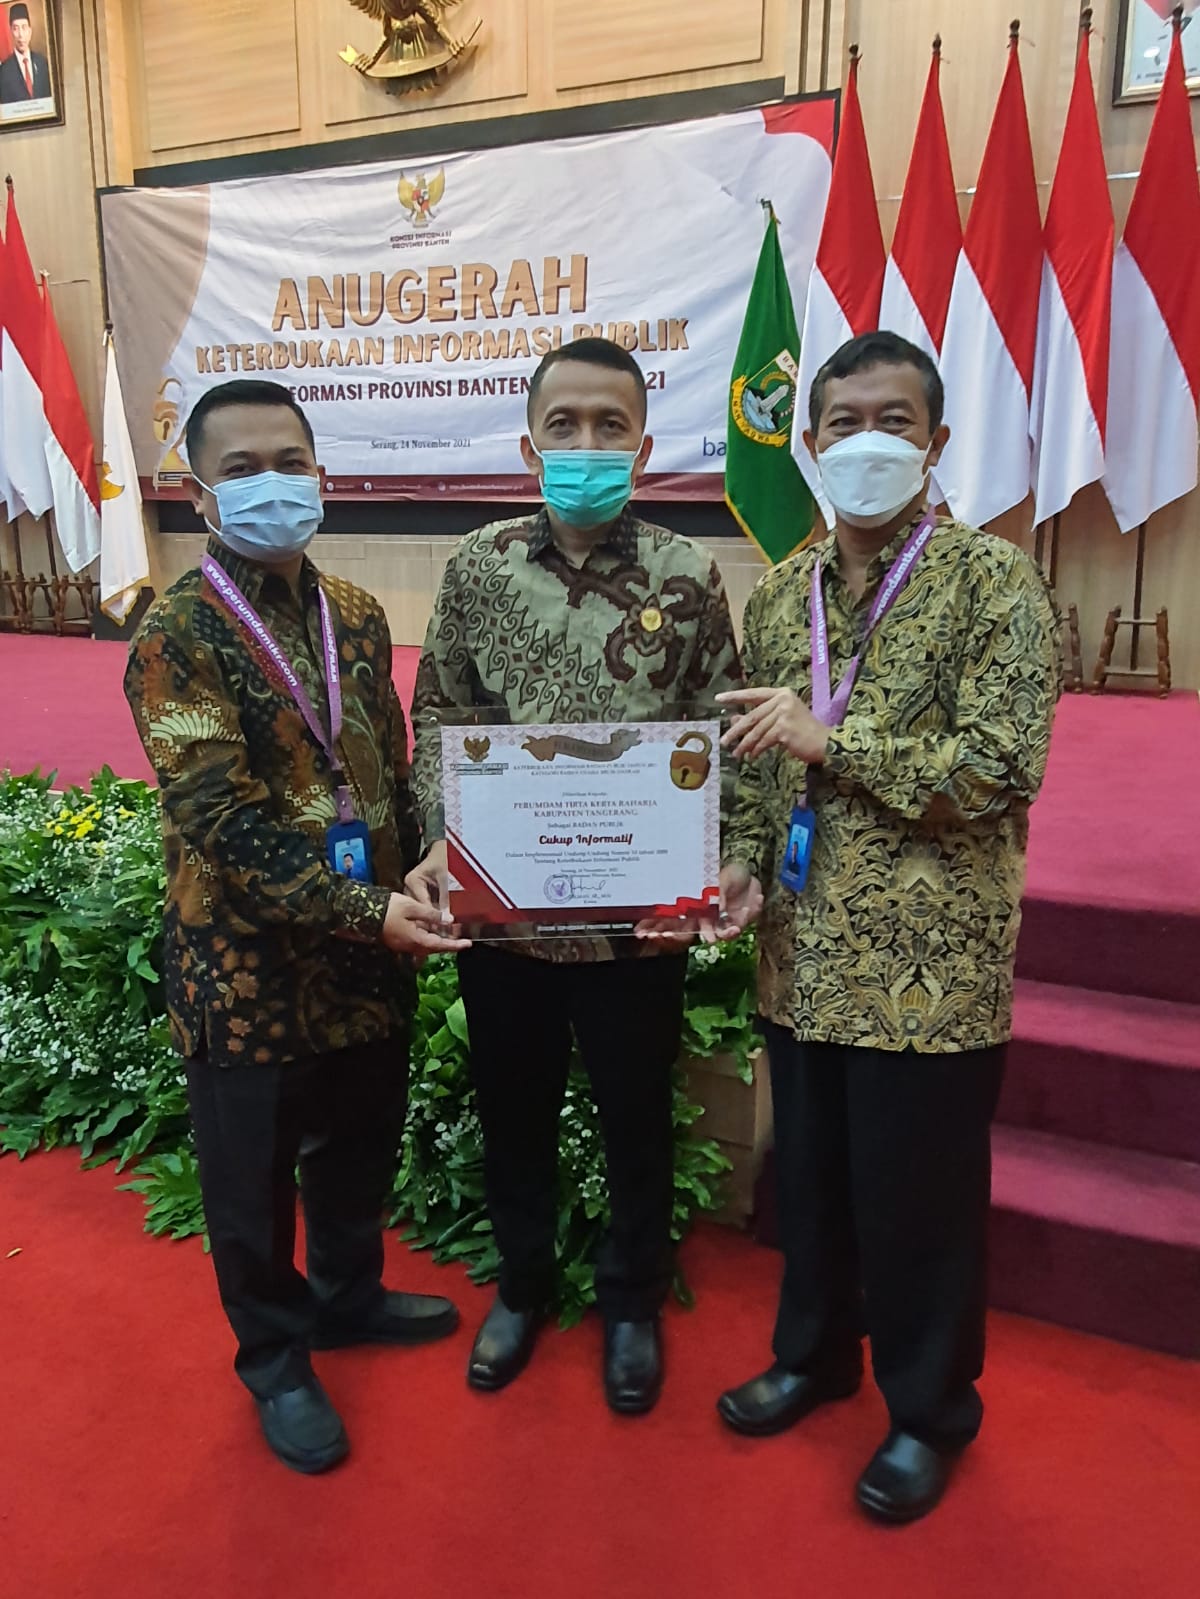 Pemkab Tangerang dan PERUMDAM TKR Raih Anugerah Keterbukaan Informasi Publik di Provinsi Banten